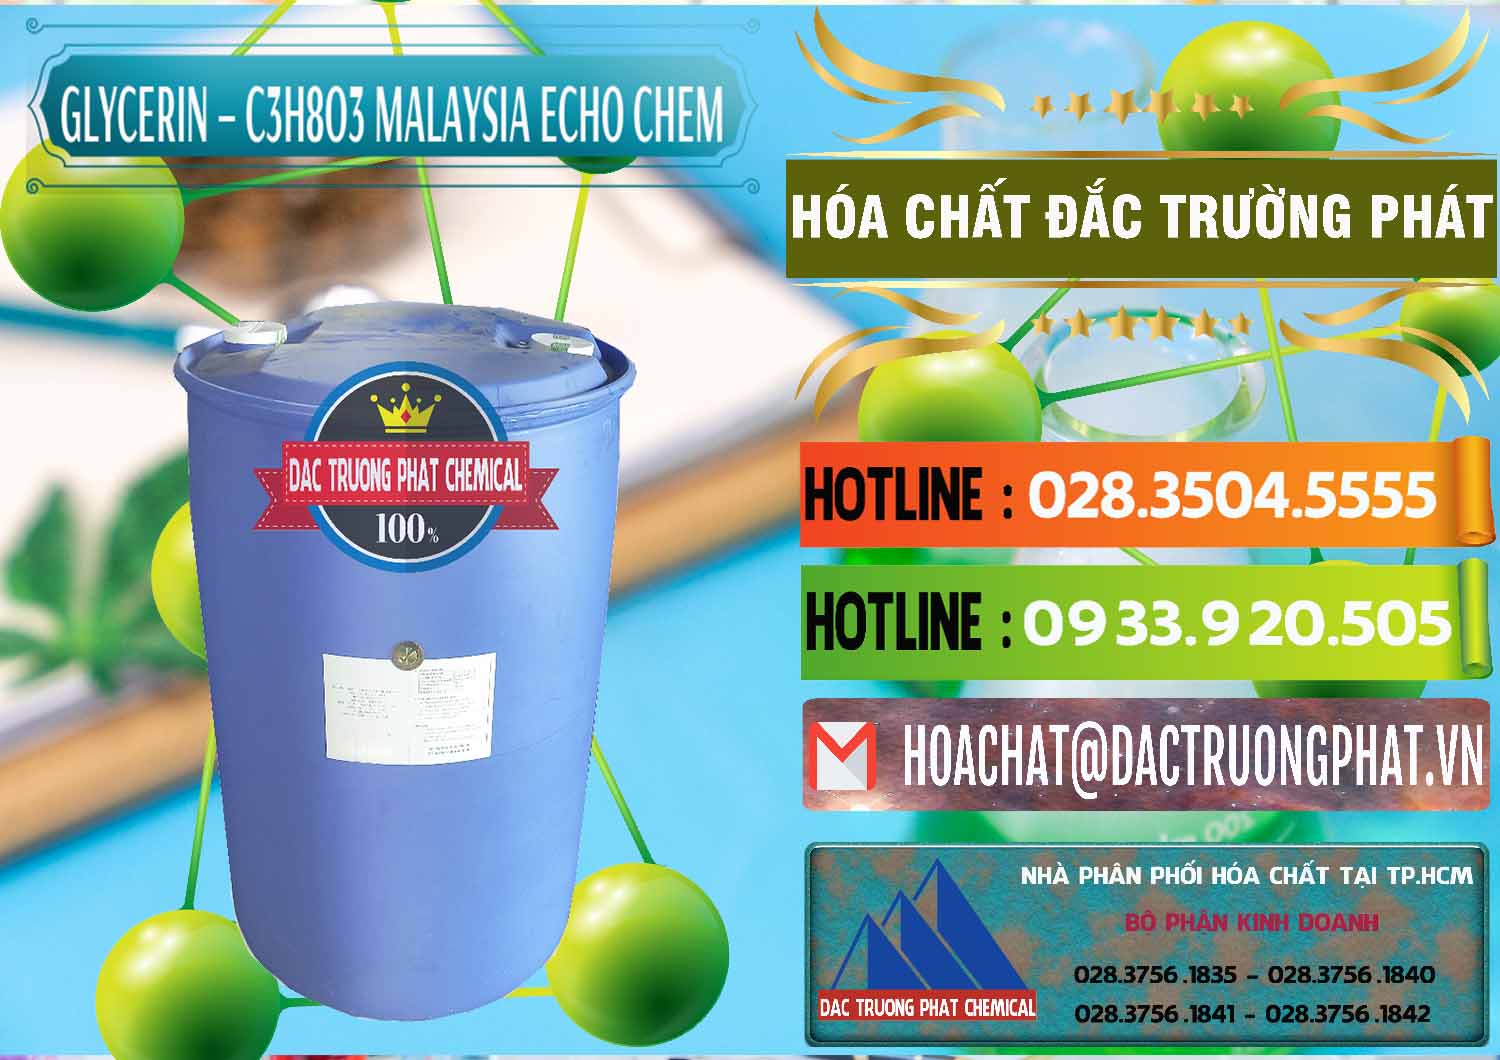 Nơi cung cấp & bán Glycerin – C3H8O3 99.7% Echo Chem Malaysia - 0273 - Cty chuyên nhập khẩu & cung cấp hóa chất tại TP.HCM - cungcaphoachat.com.vn